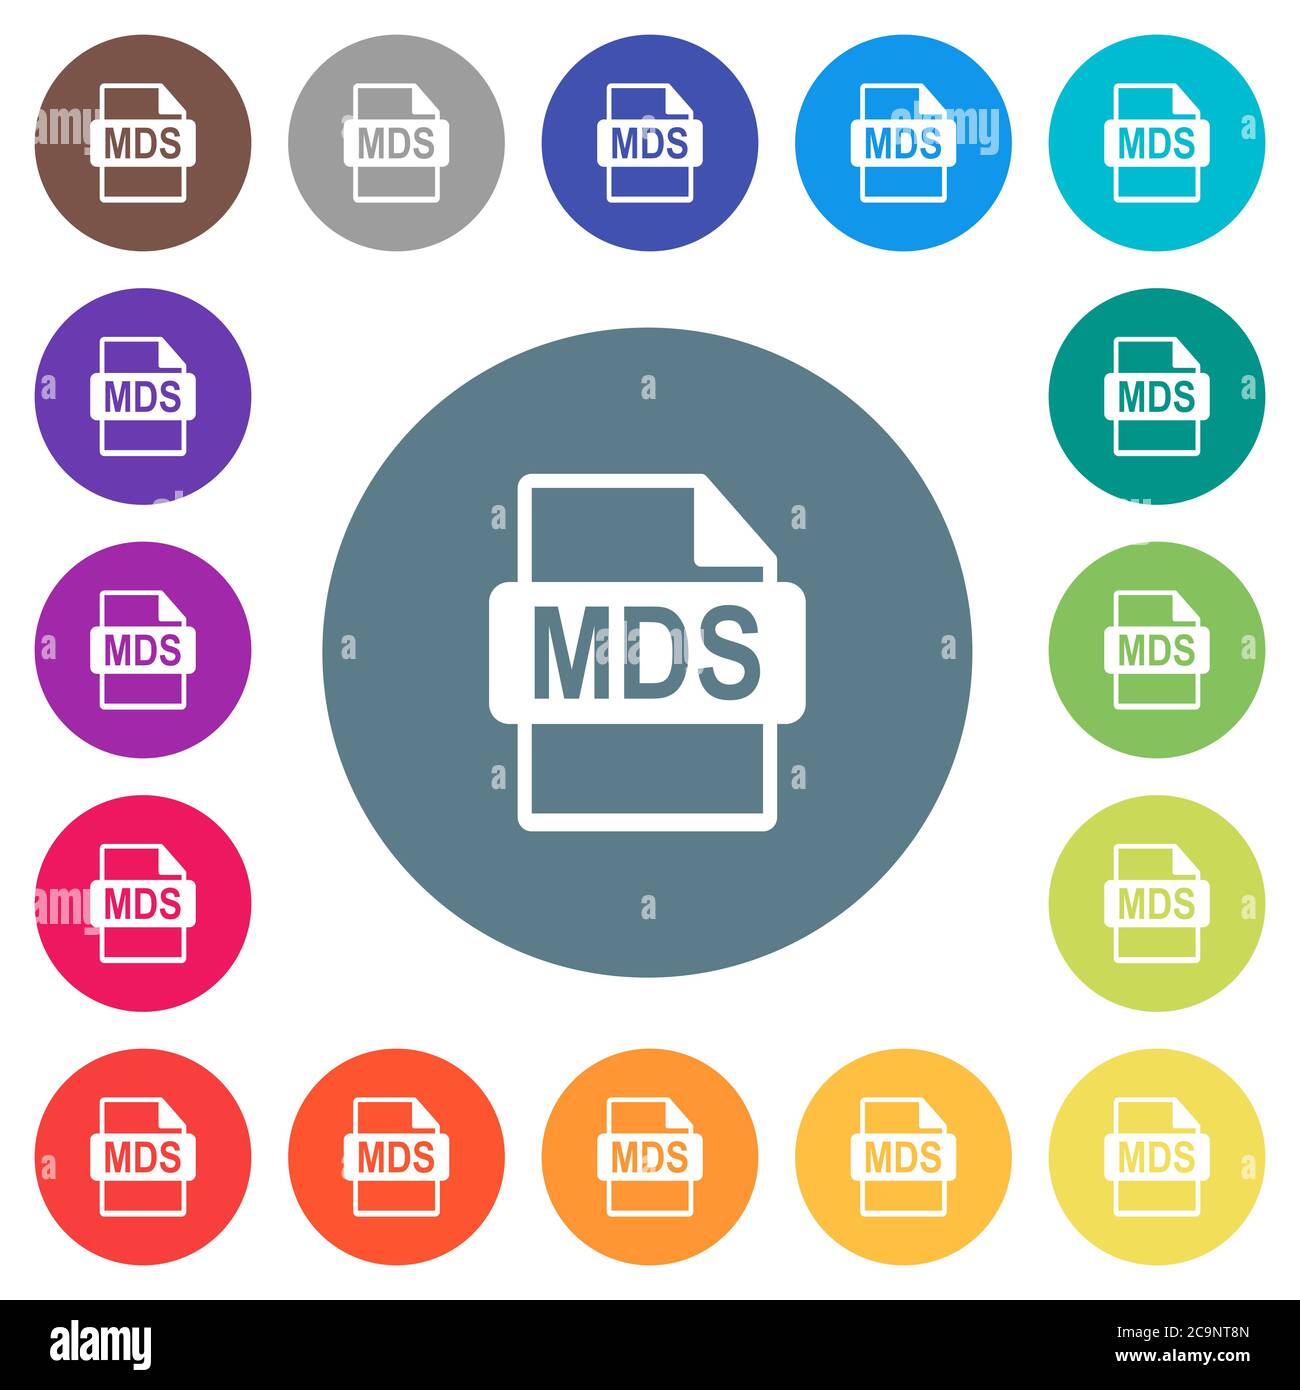 MDS-Dateiformat flache weiße Symbole auf runden farbigen Hintergründen. 17 Hintergrundfarbvarianten sind enthalten. Stock Vektor